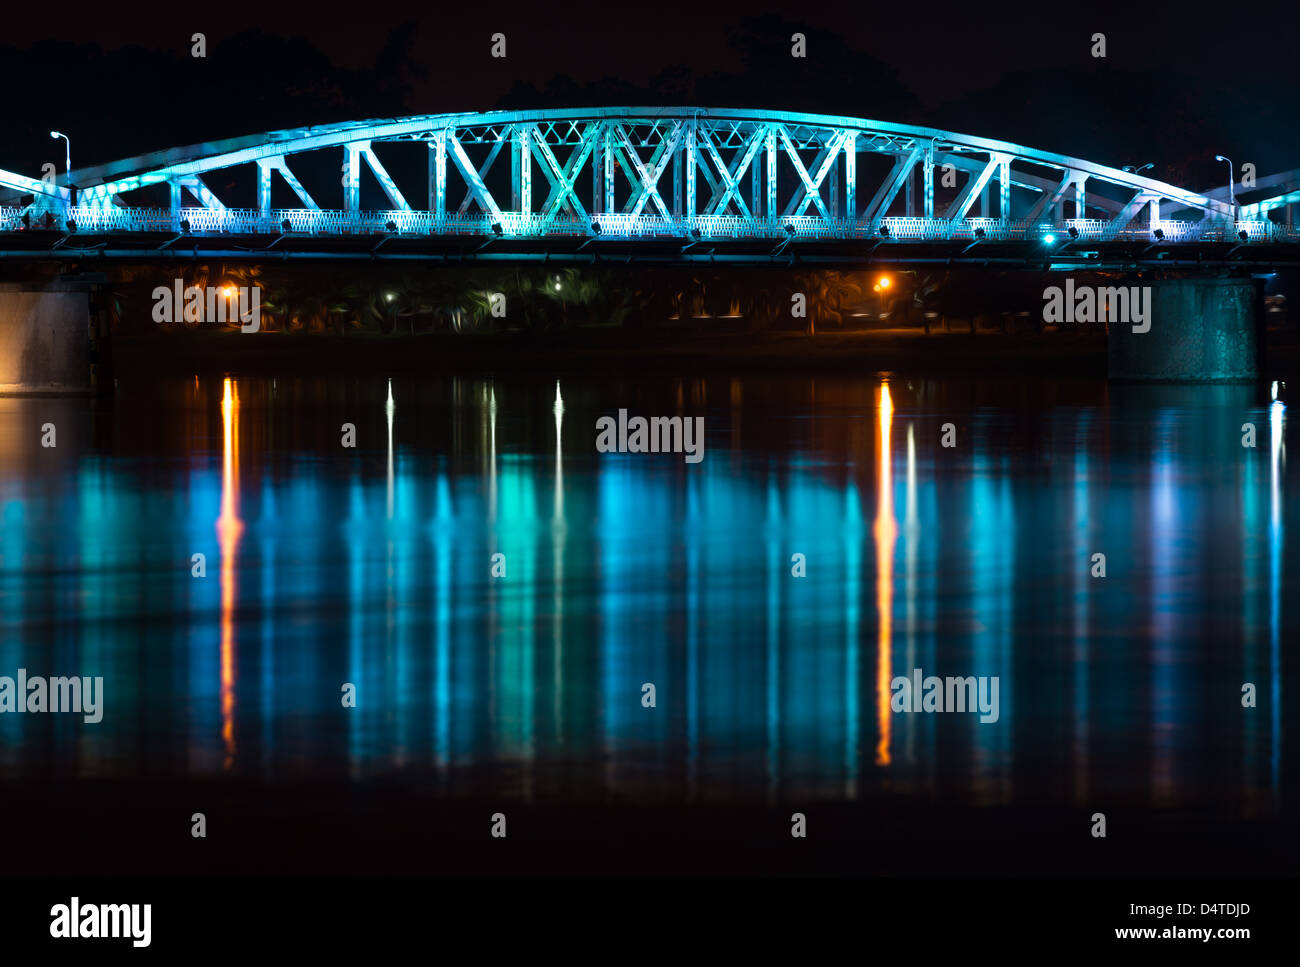 Panoramic view of Truong Tien Bridge in Hue City at night. Bridge